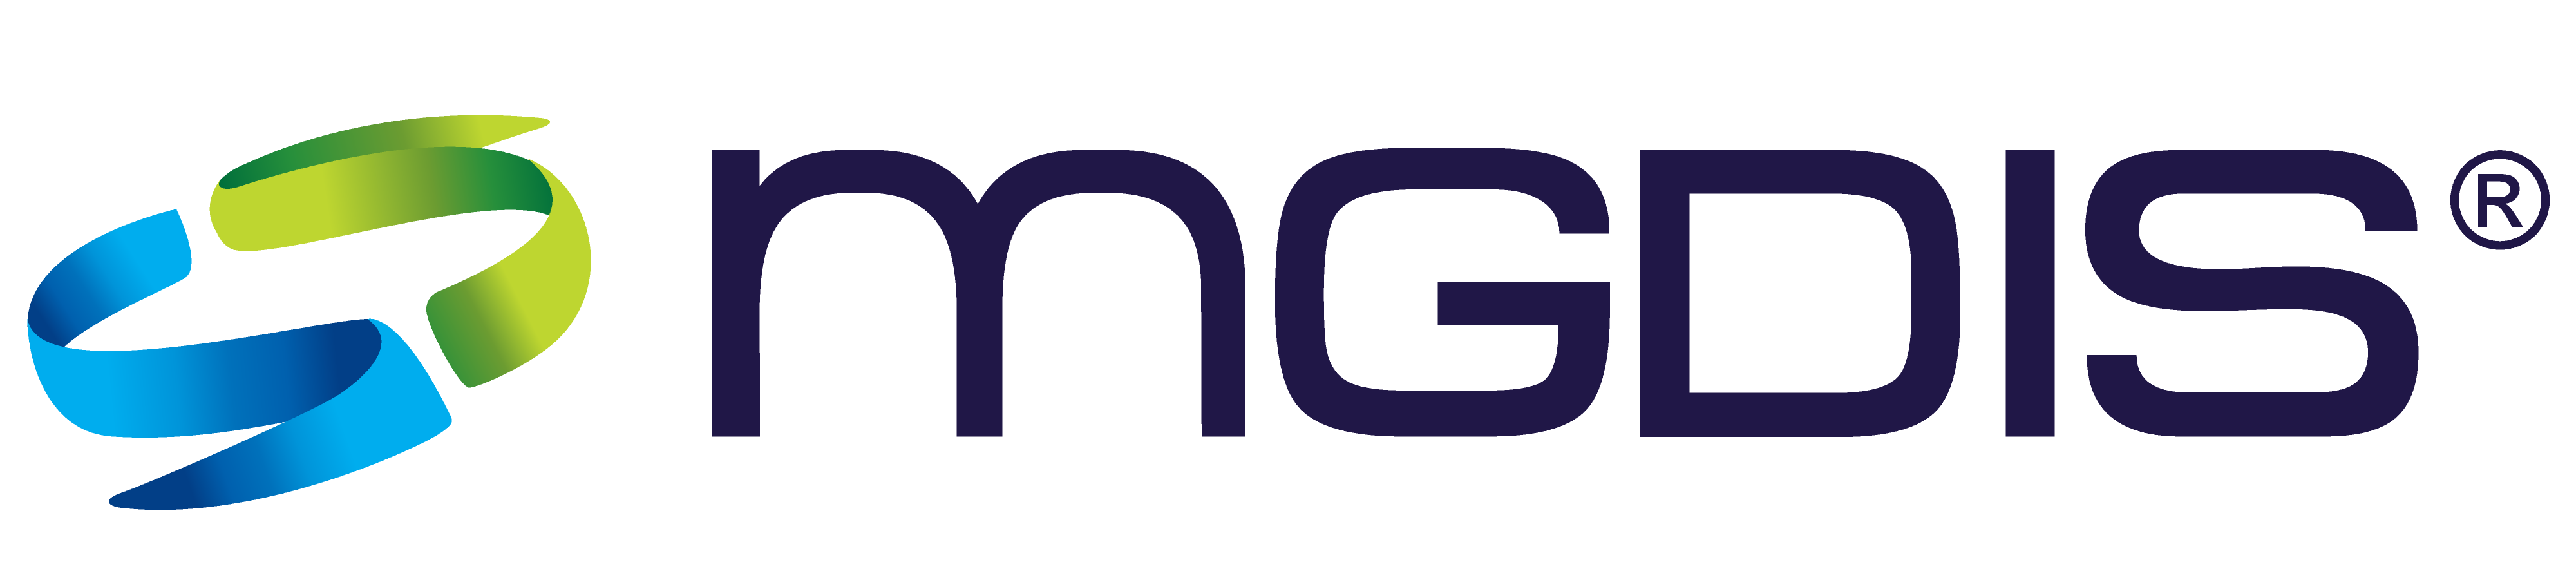 Logo MGDIS